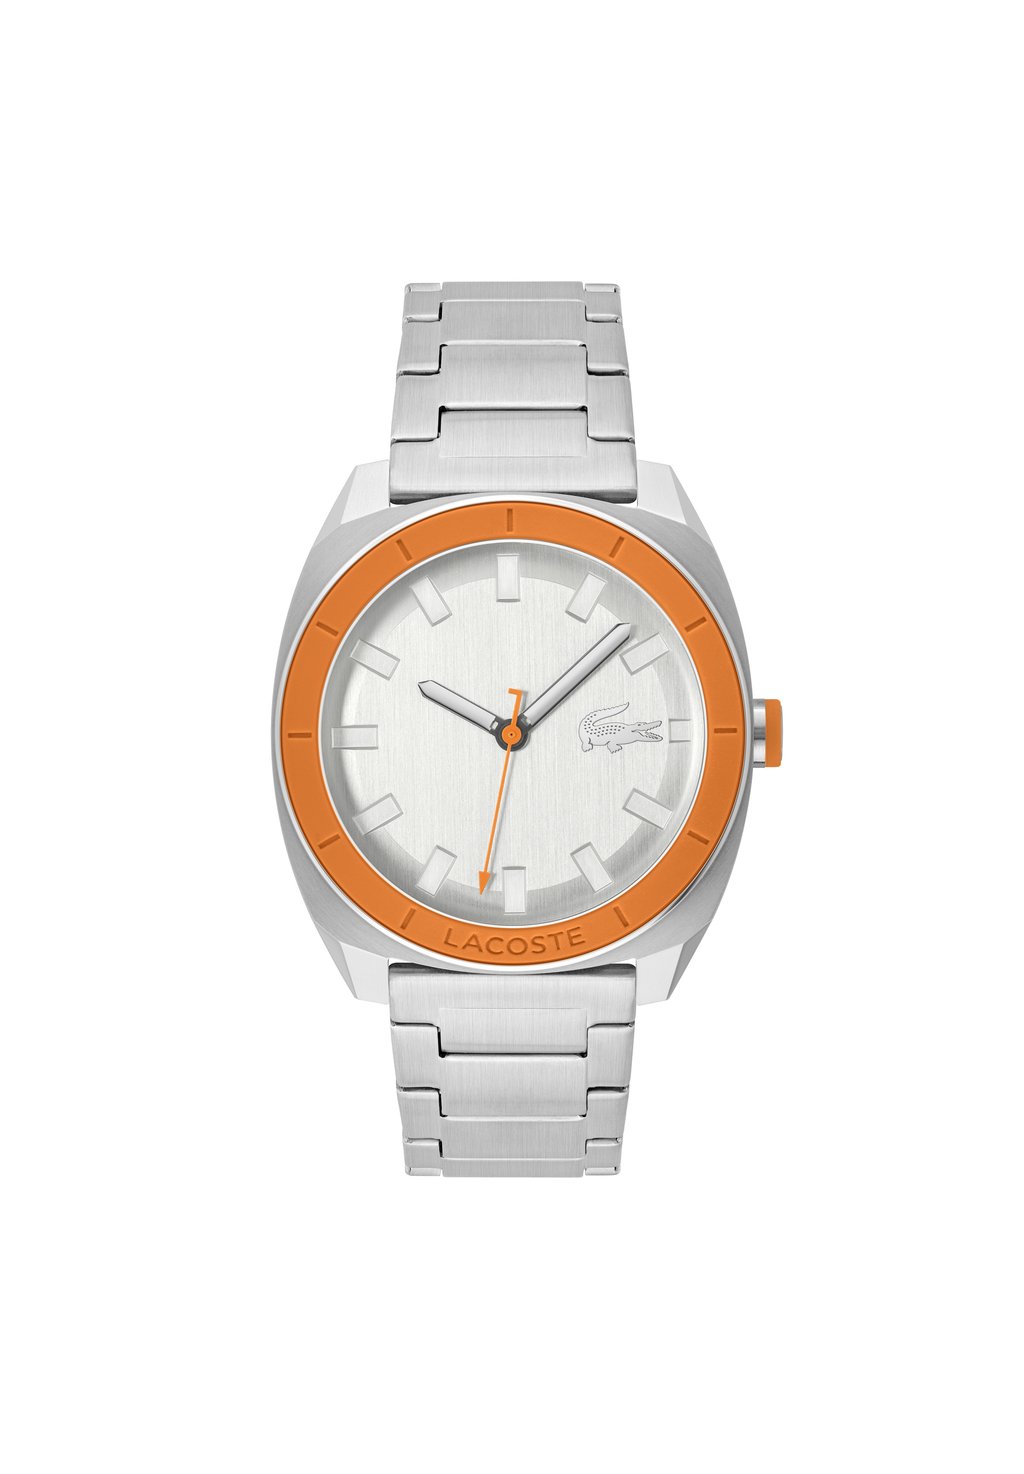 Часы Sprint Lacoste, цвет silber orange silber silber